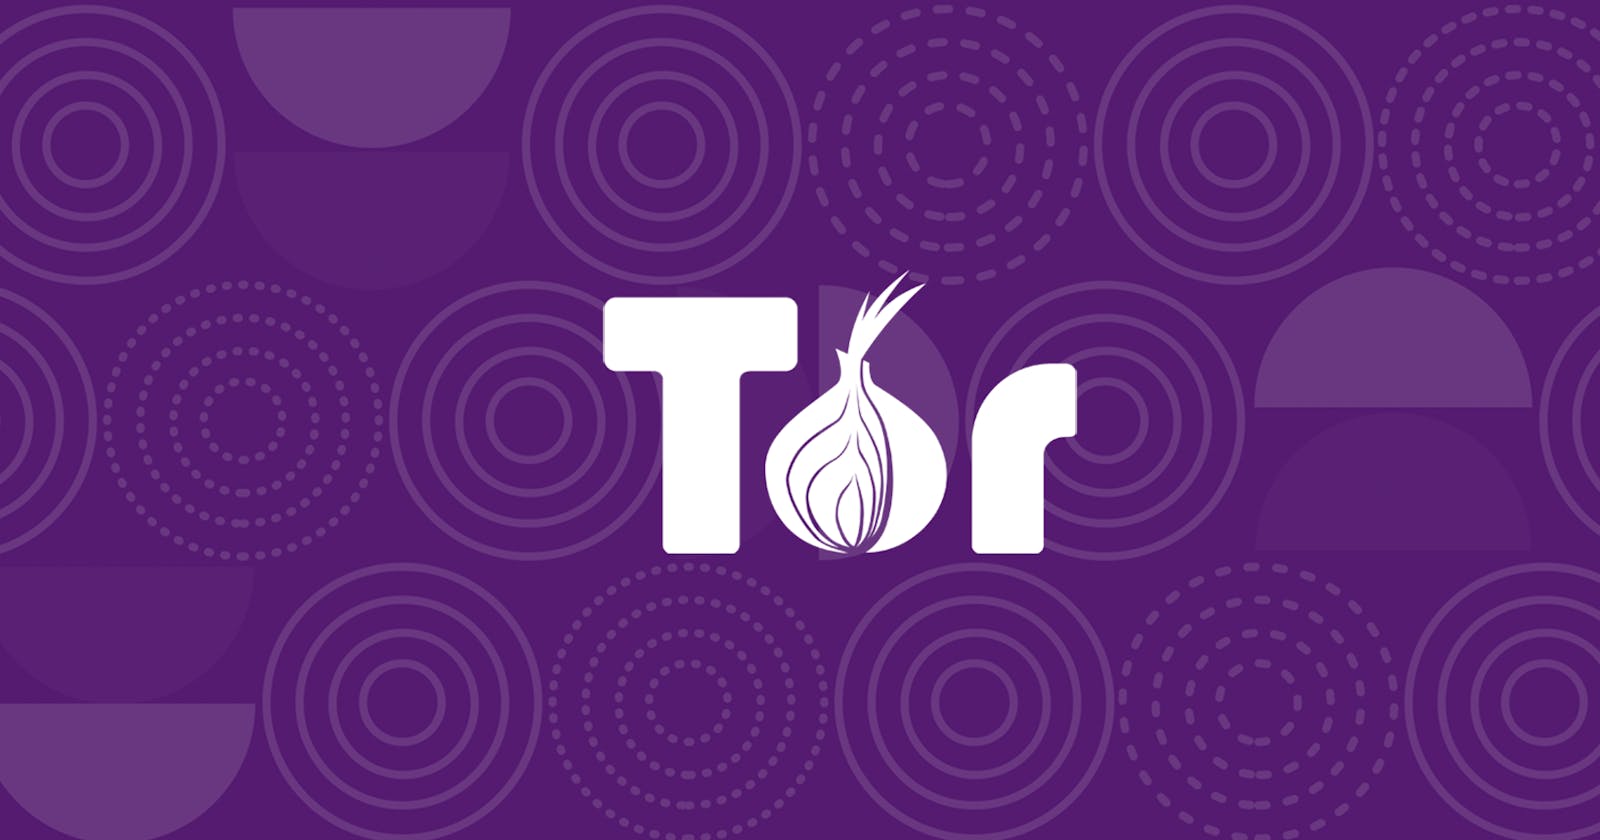 Installing Tor Browser on Kali Linux